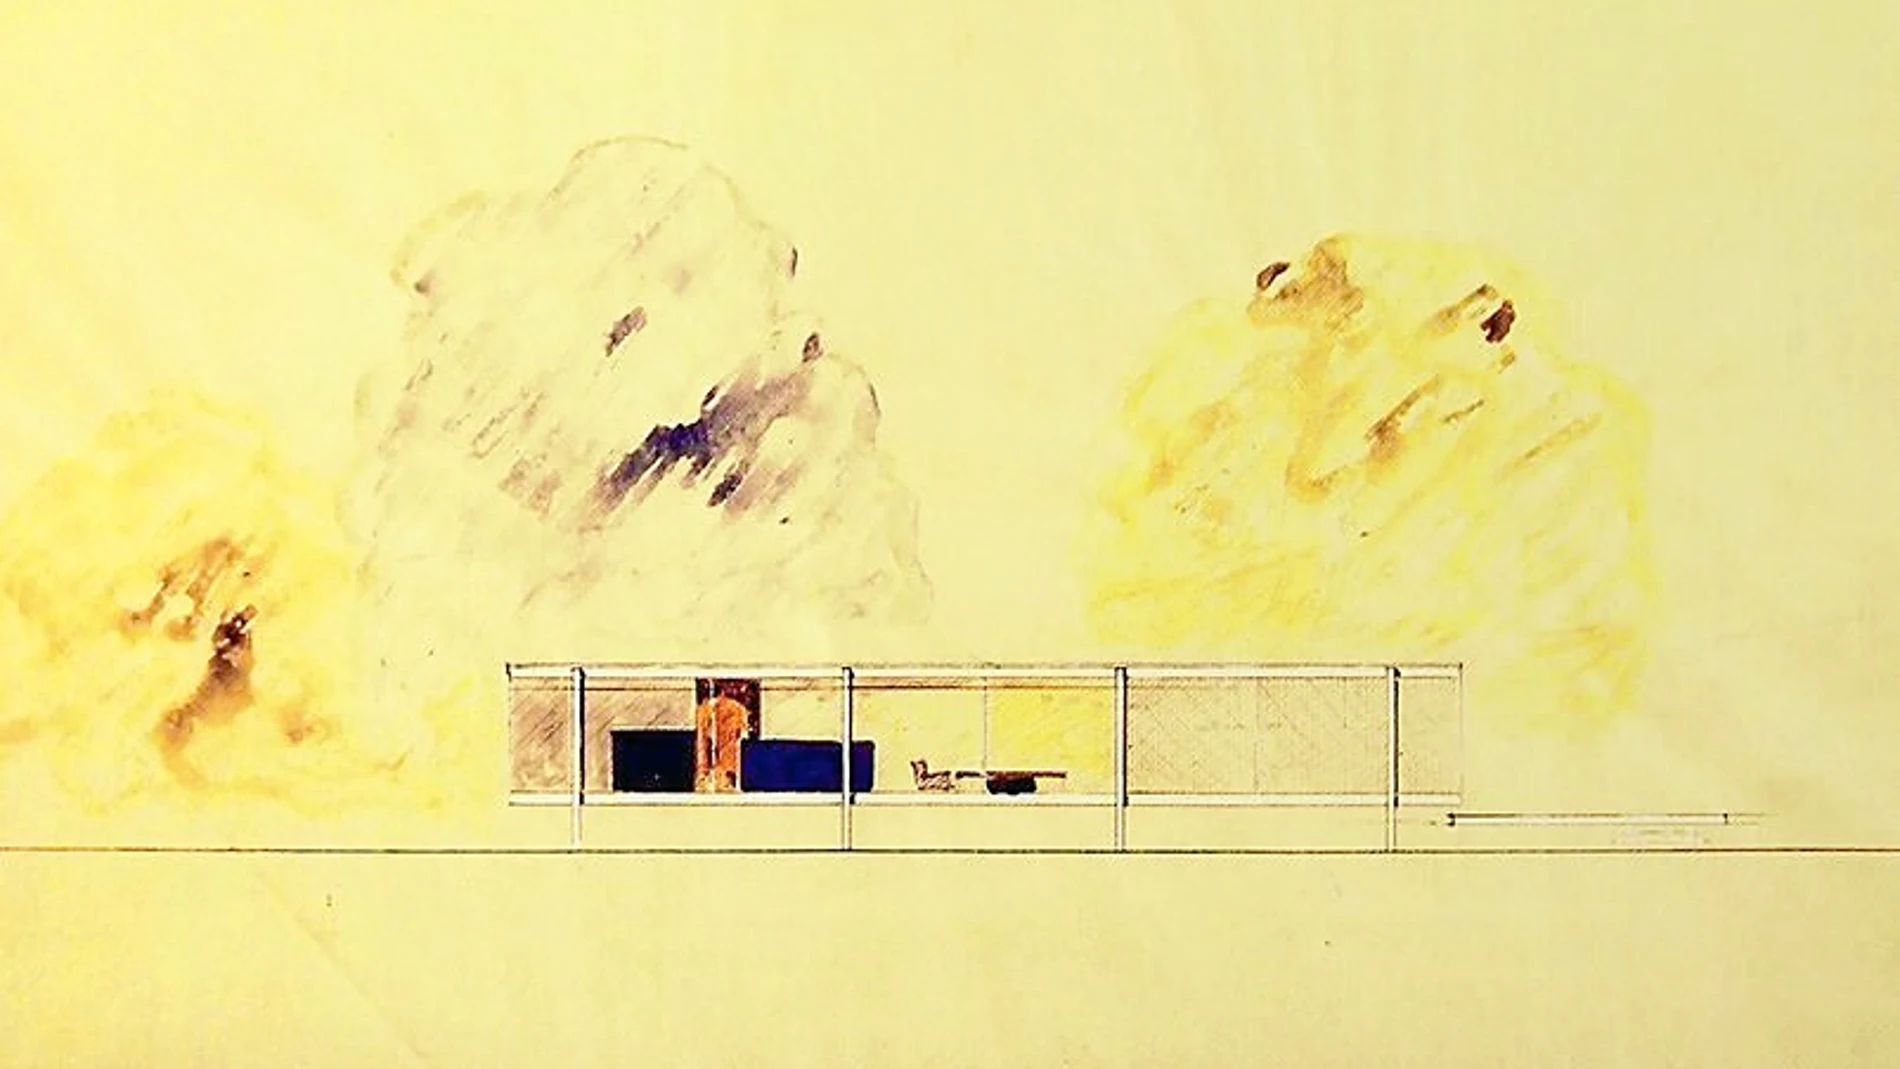 Un boceto de Mies van der Rohe, conservador en el MoMA, para uno de sus proyectos arquitectónicos